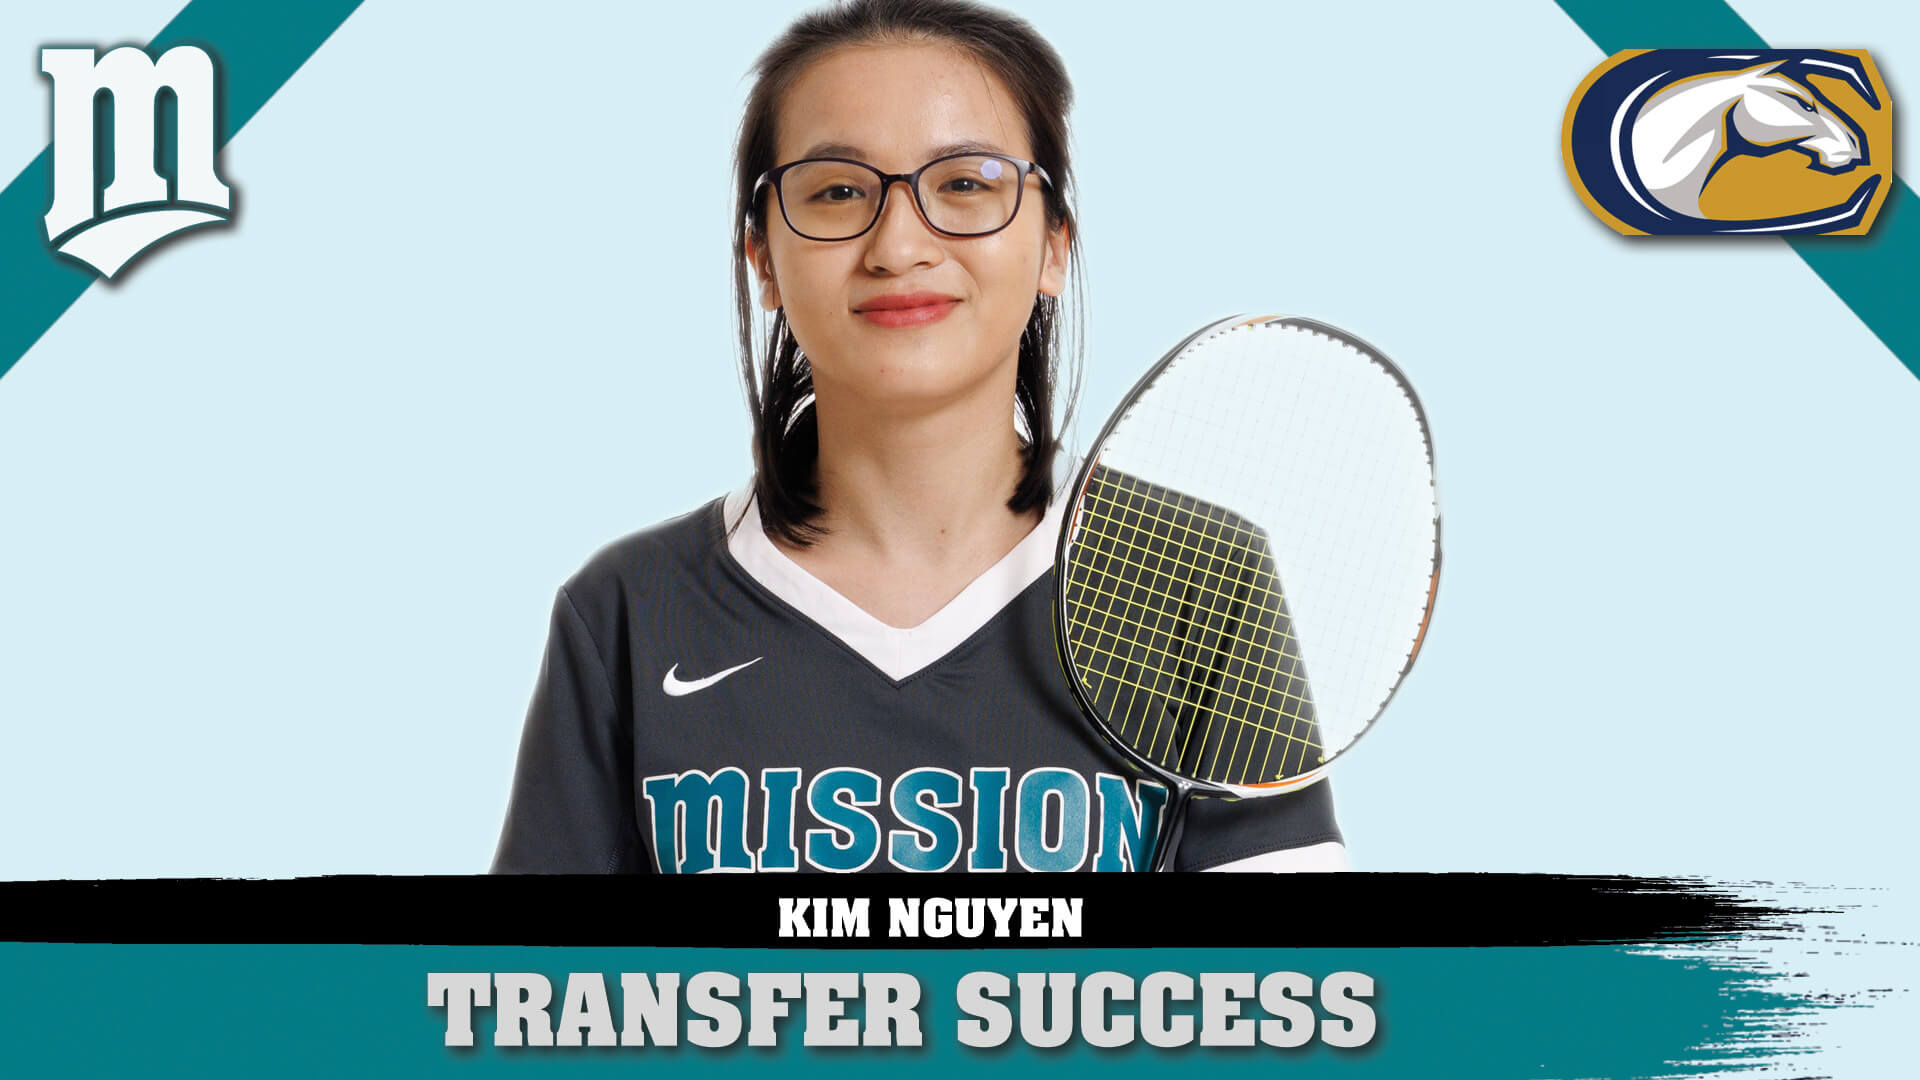 woman holding racket over shoulder